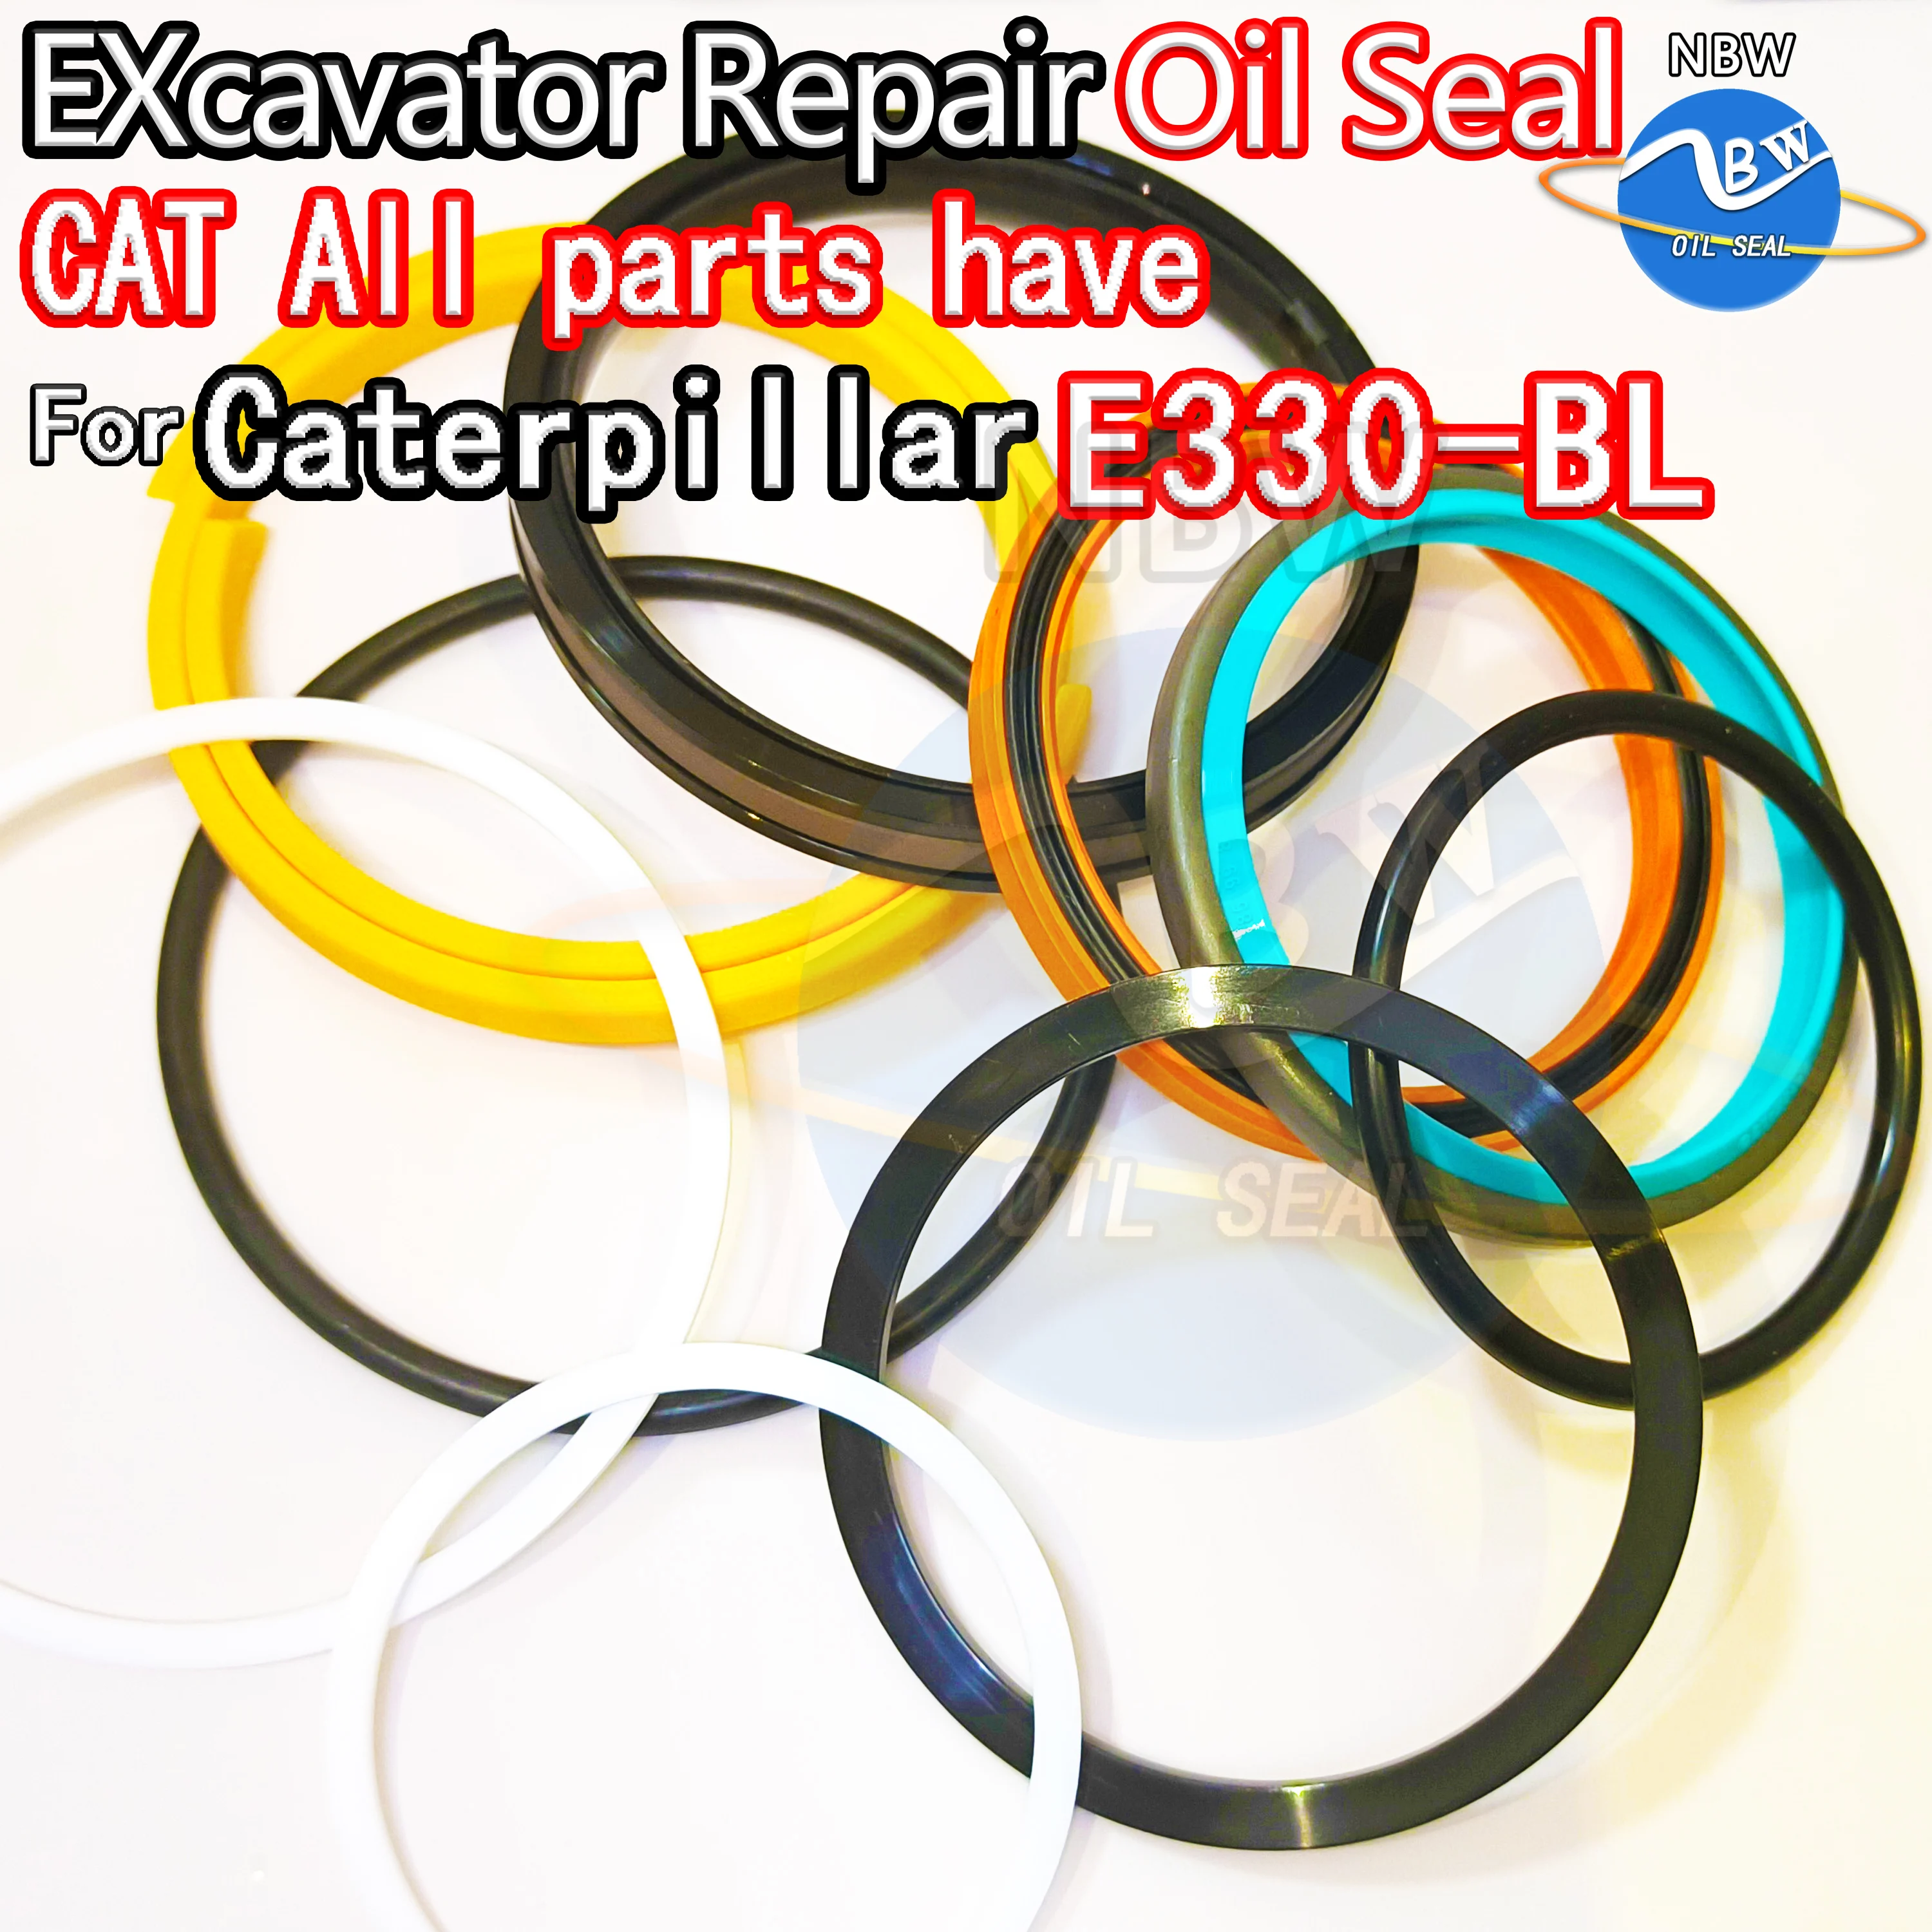 

For Caterpillar E330-BL Oil Seal Kit Cat Excavator Repair E330 BL Swing Gear Center Joint Gasket Nitrile NBR Nok Washer Skf Tool